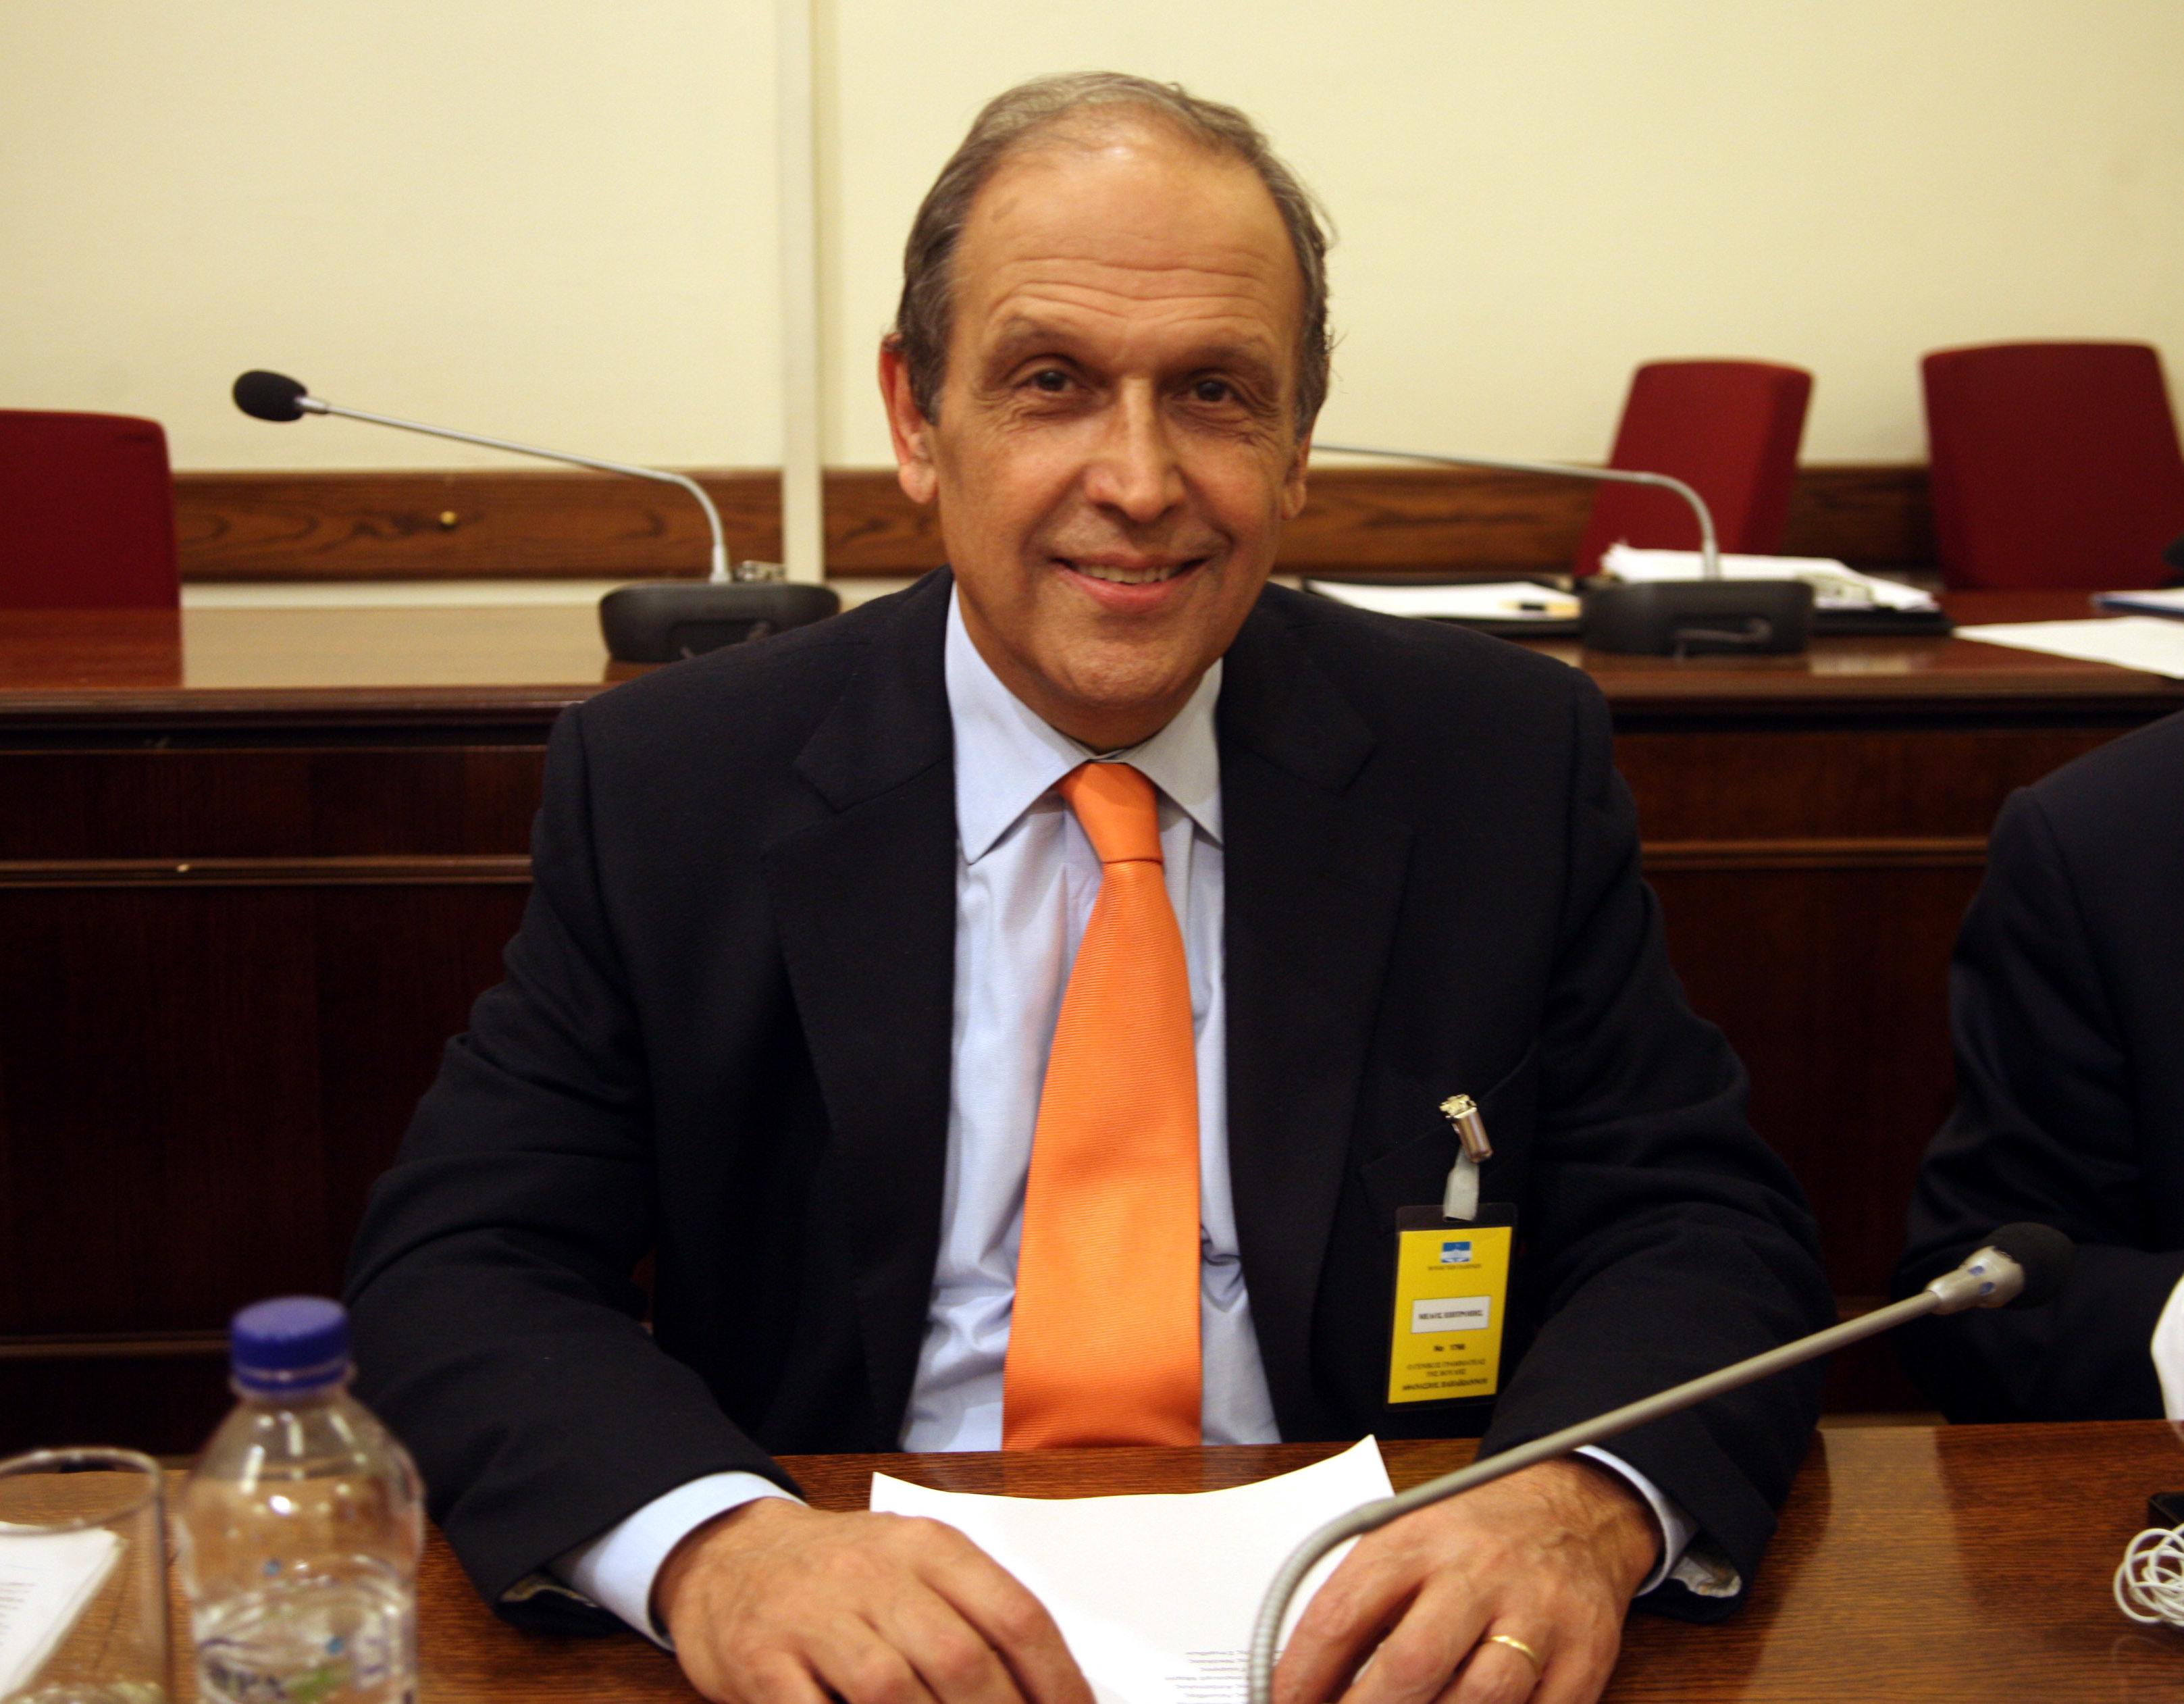 Πέθανε ο Στέλιος Σταυρίδης, πρώην πρόεδρος του ΤΑΙΠΕΔ